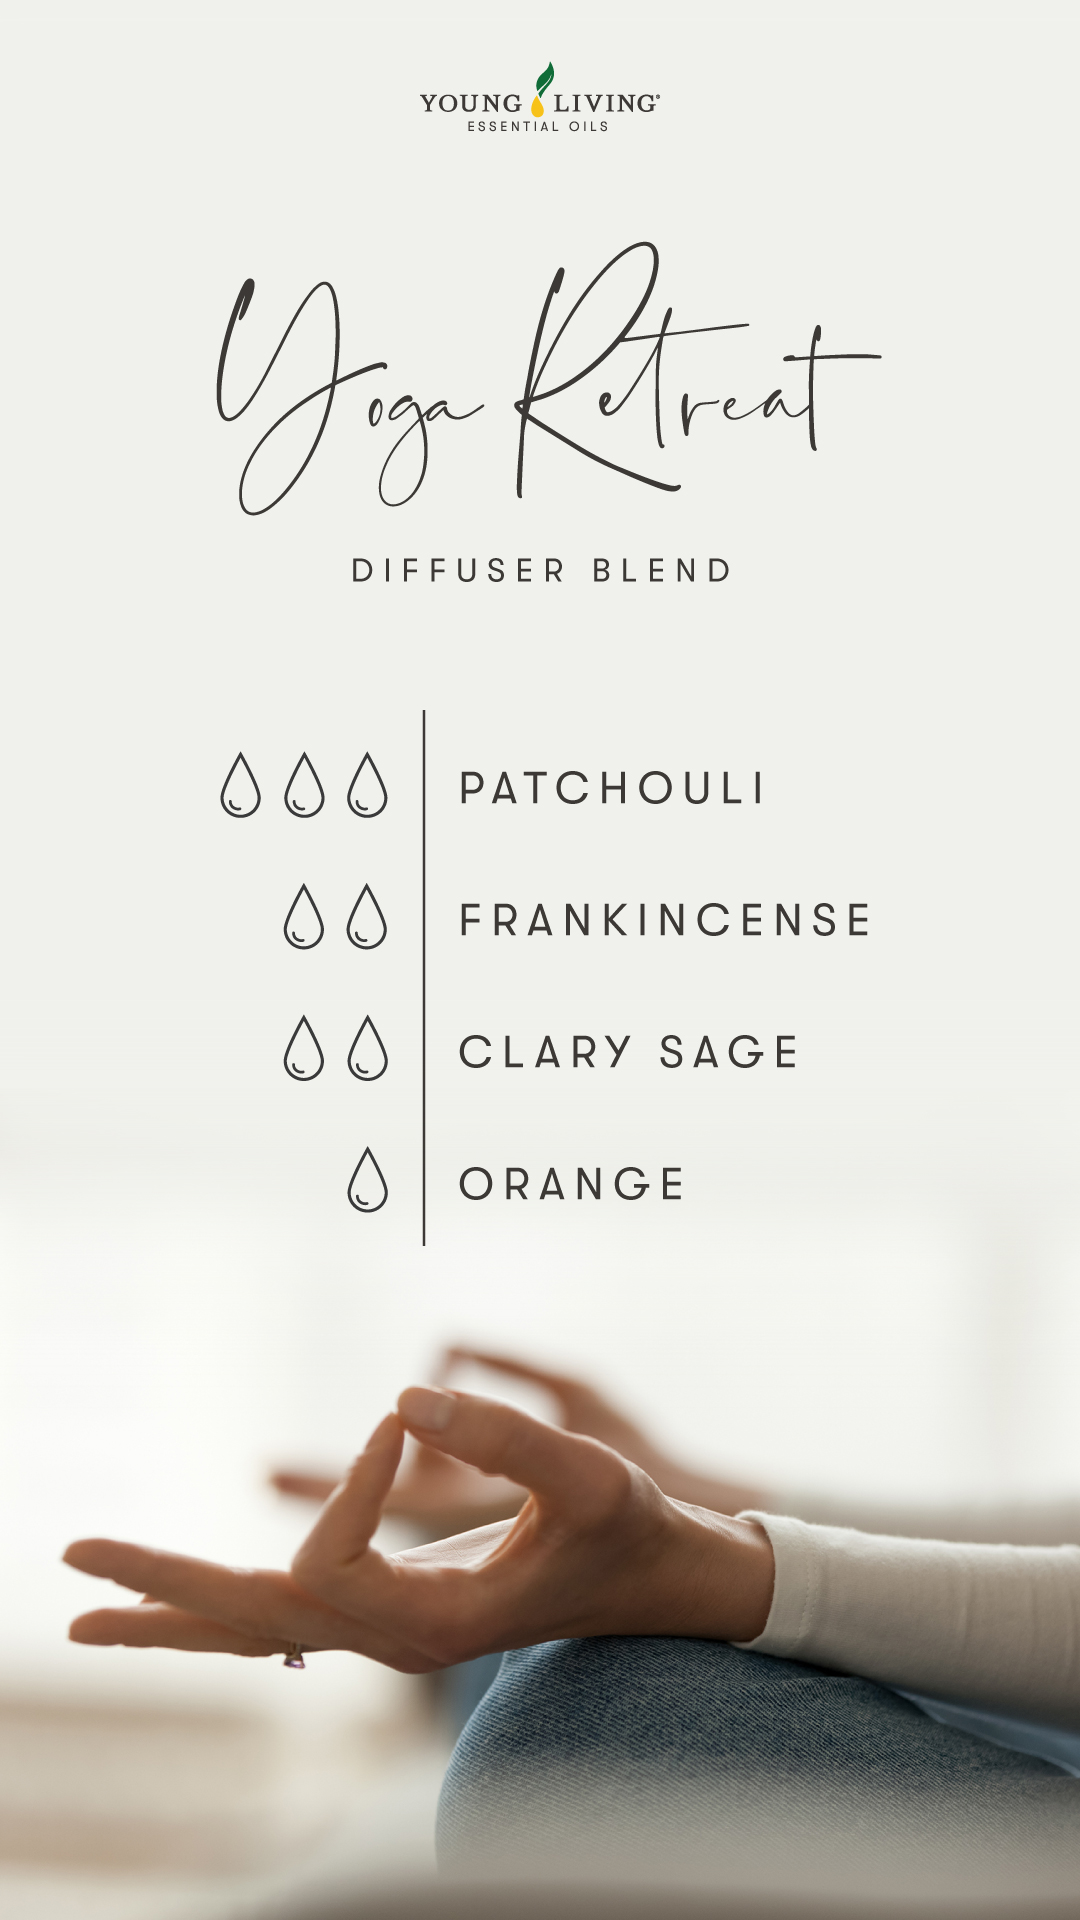 Yoga Retreat Diffuser Blend - 3 drops Patchouli, 2 drops Frankincense, 2 drops Clary Sage, 1 drop Orange 